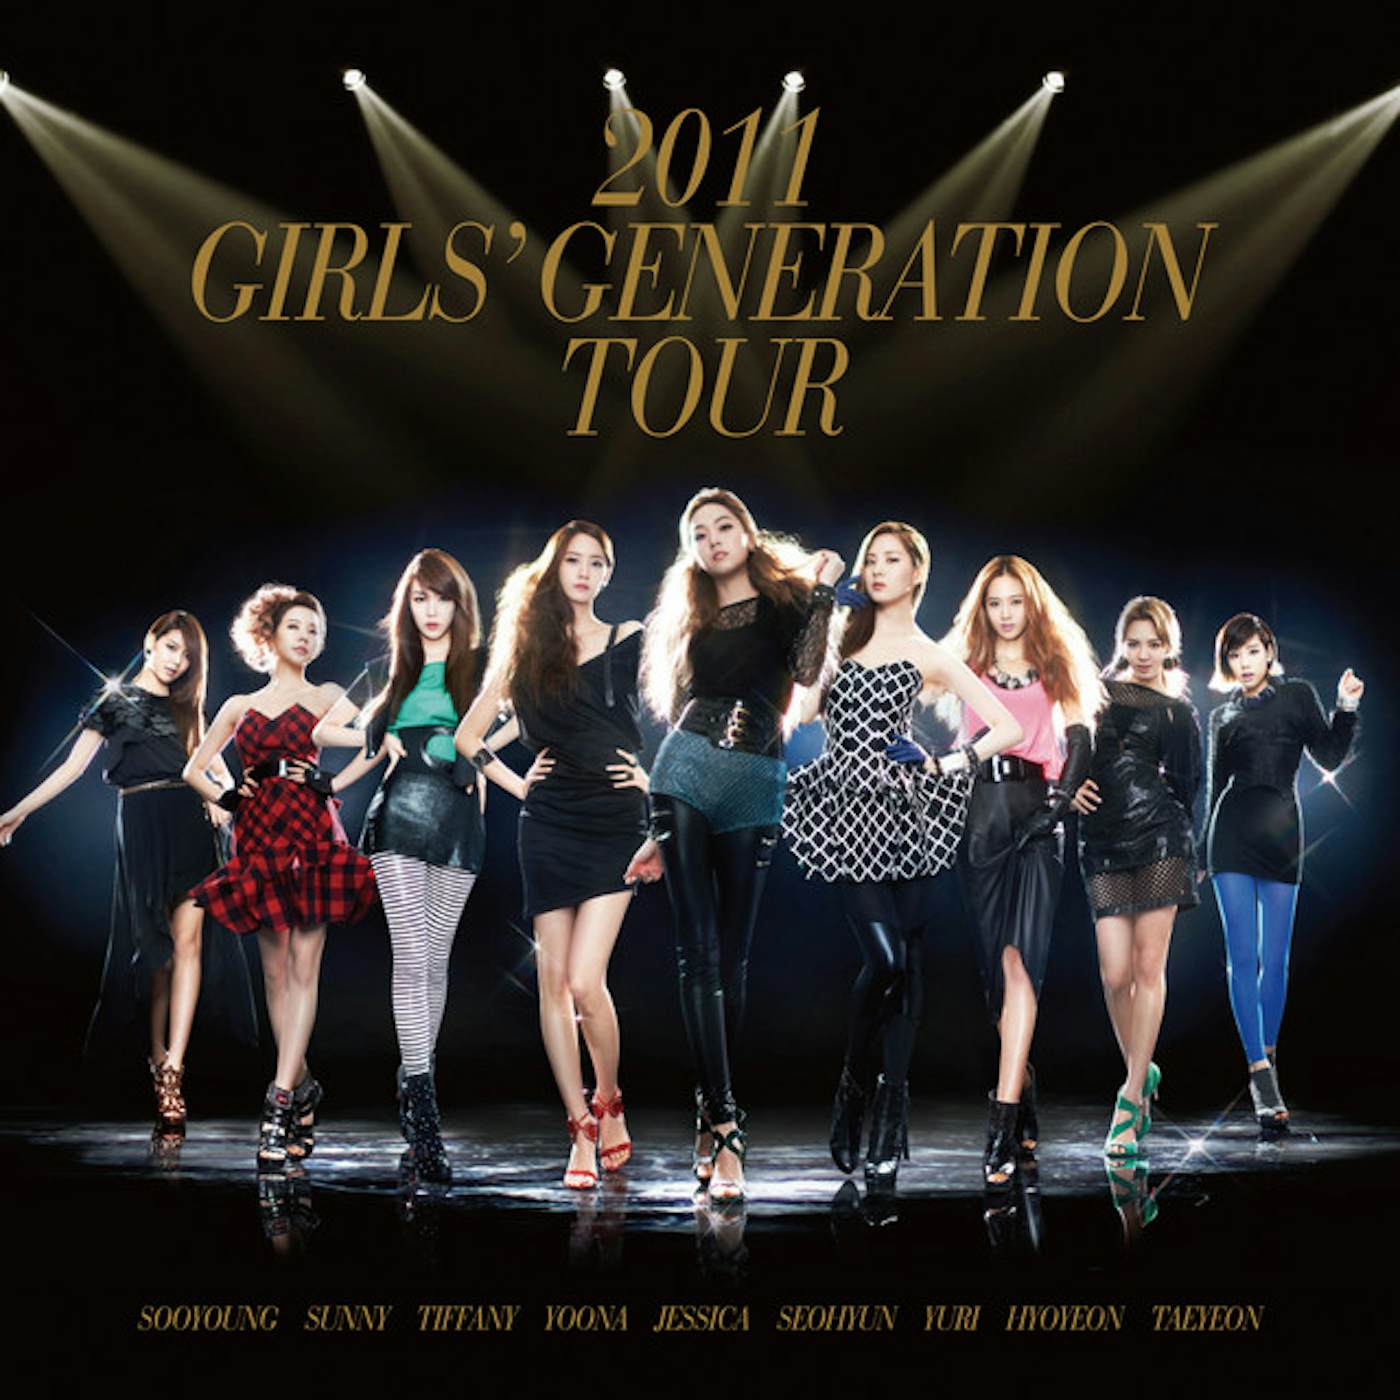 2011 Girls' Generation TOUR CD